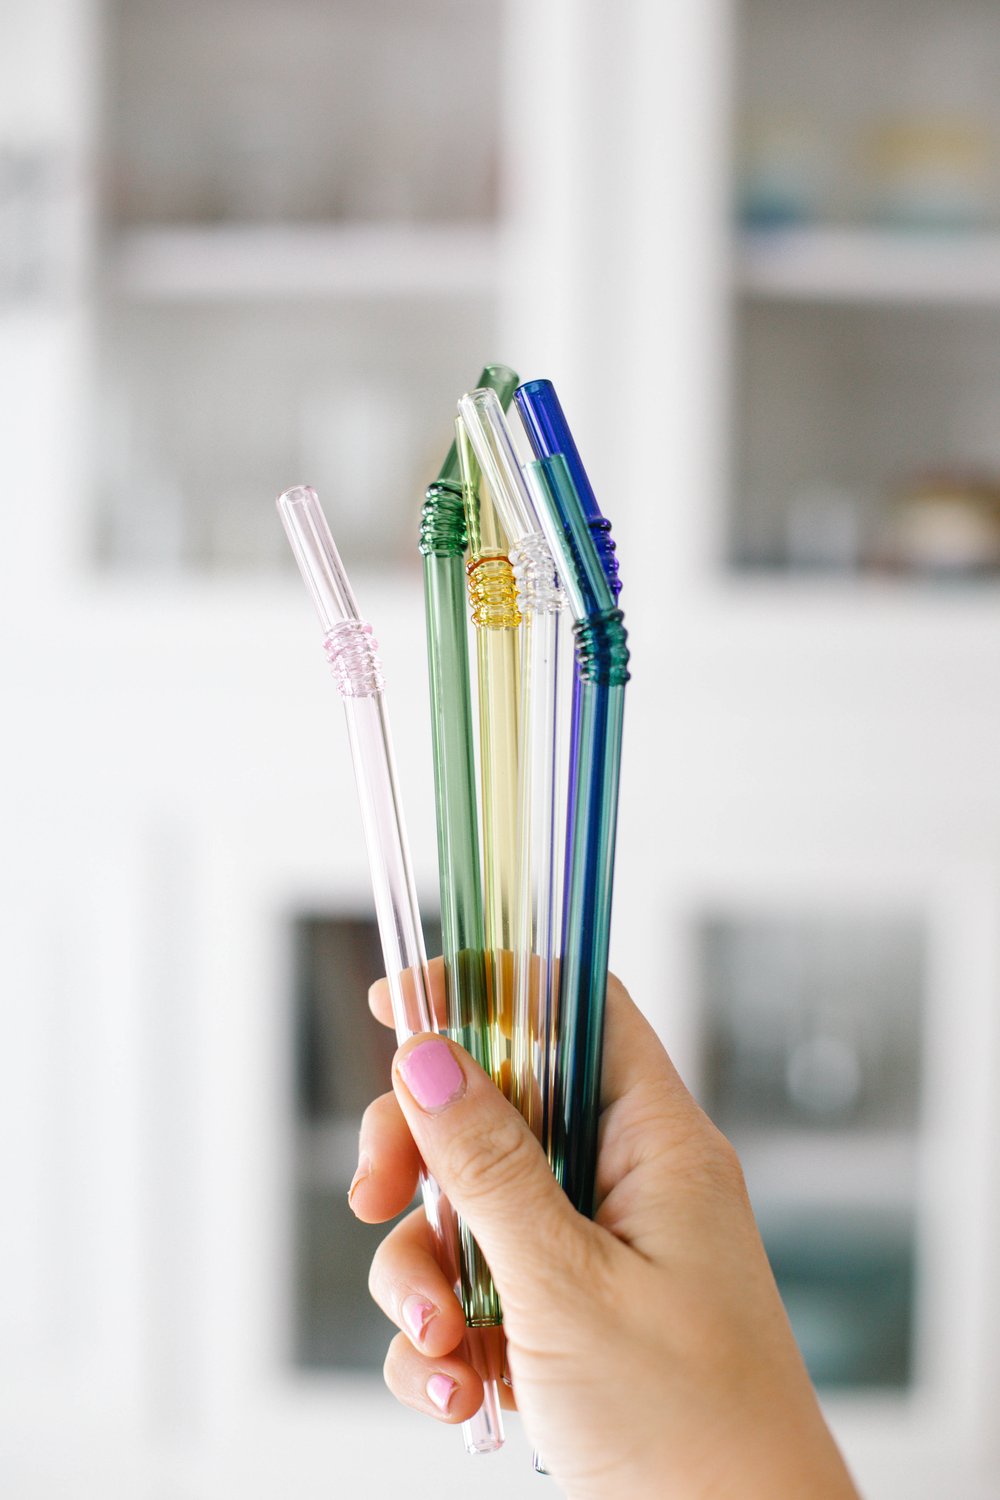 Colorful Reusable Glass Straws